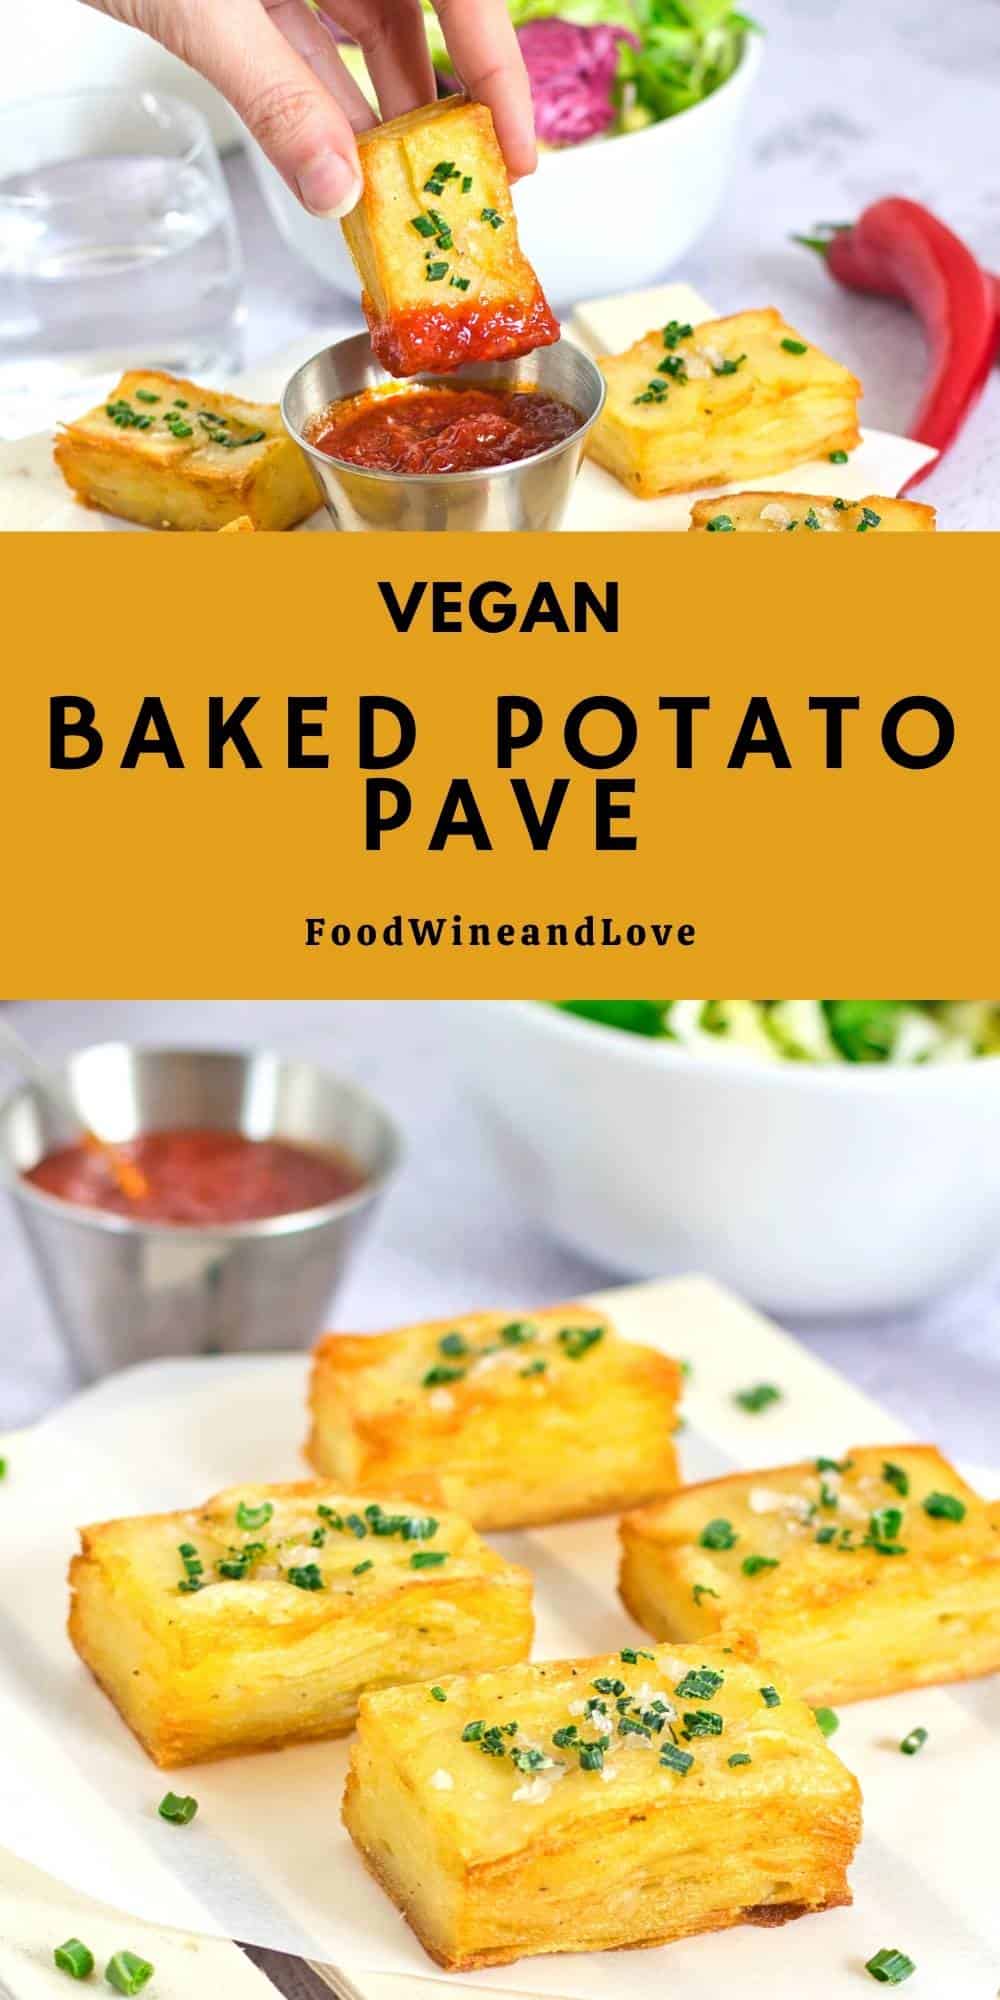 Vegan Baked Potato Pave